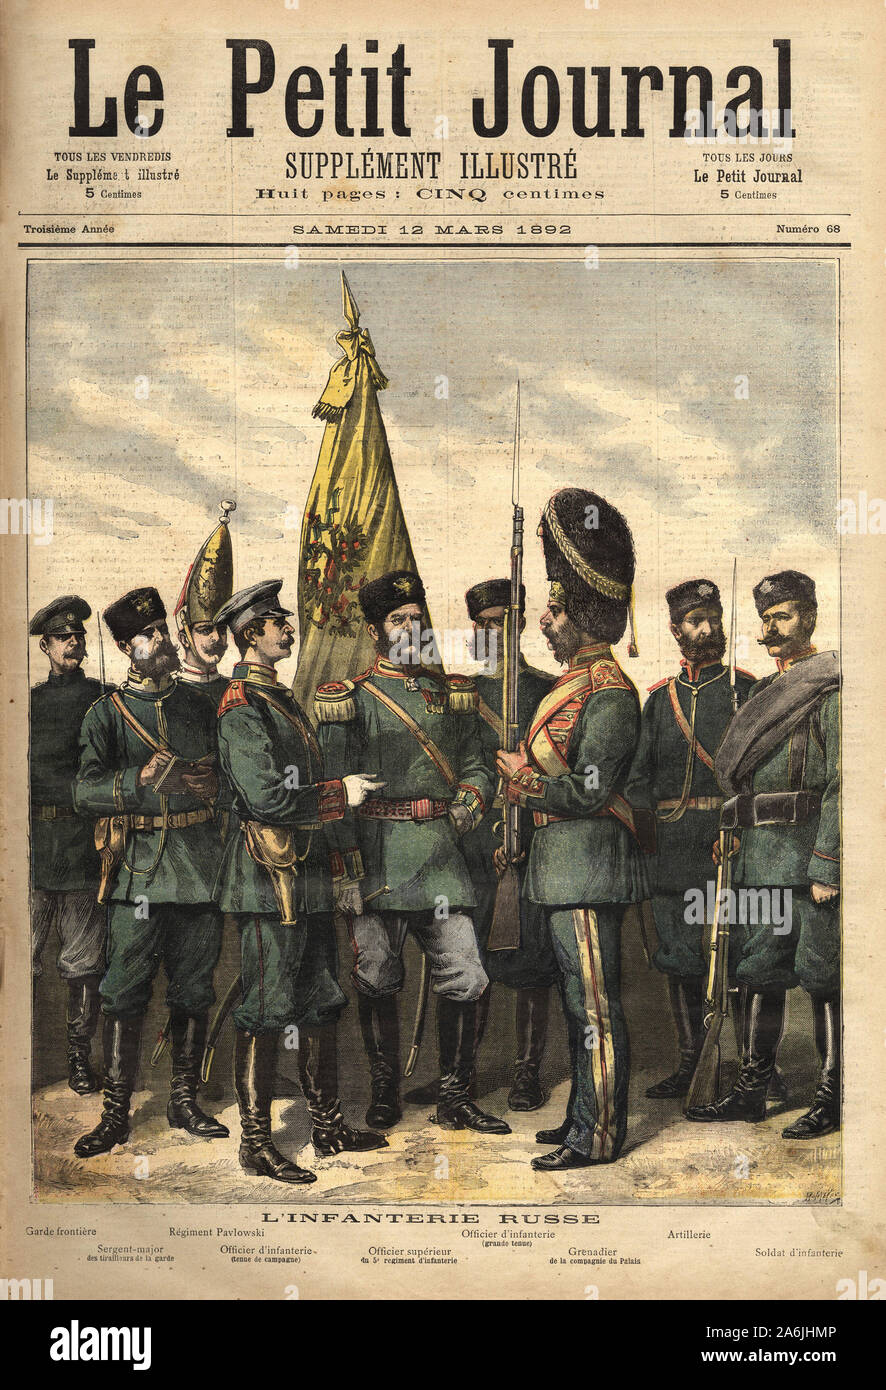 Les uniformes de l'infanterie russe, alliee de la France de gauche a droite: le garde frontiere, le sergent major des tirailleurs de la Garde, le ri Foto Stock